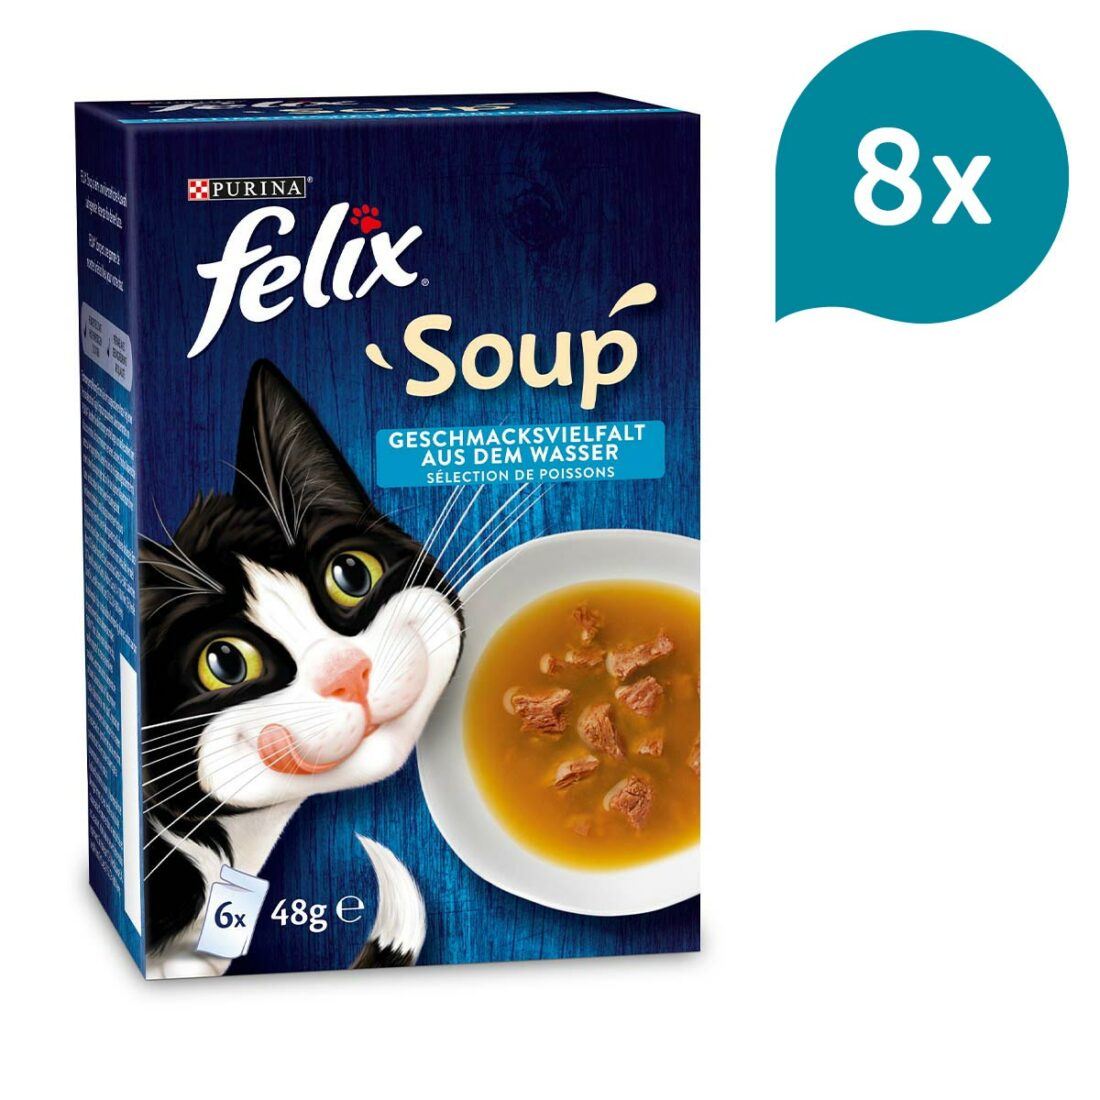 FELIX Soup výběr z vody s treskou